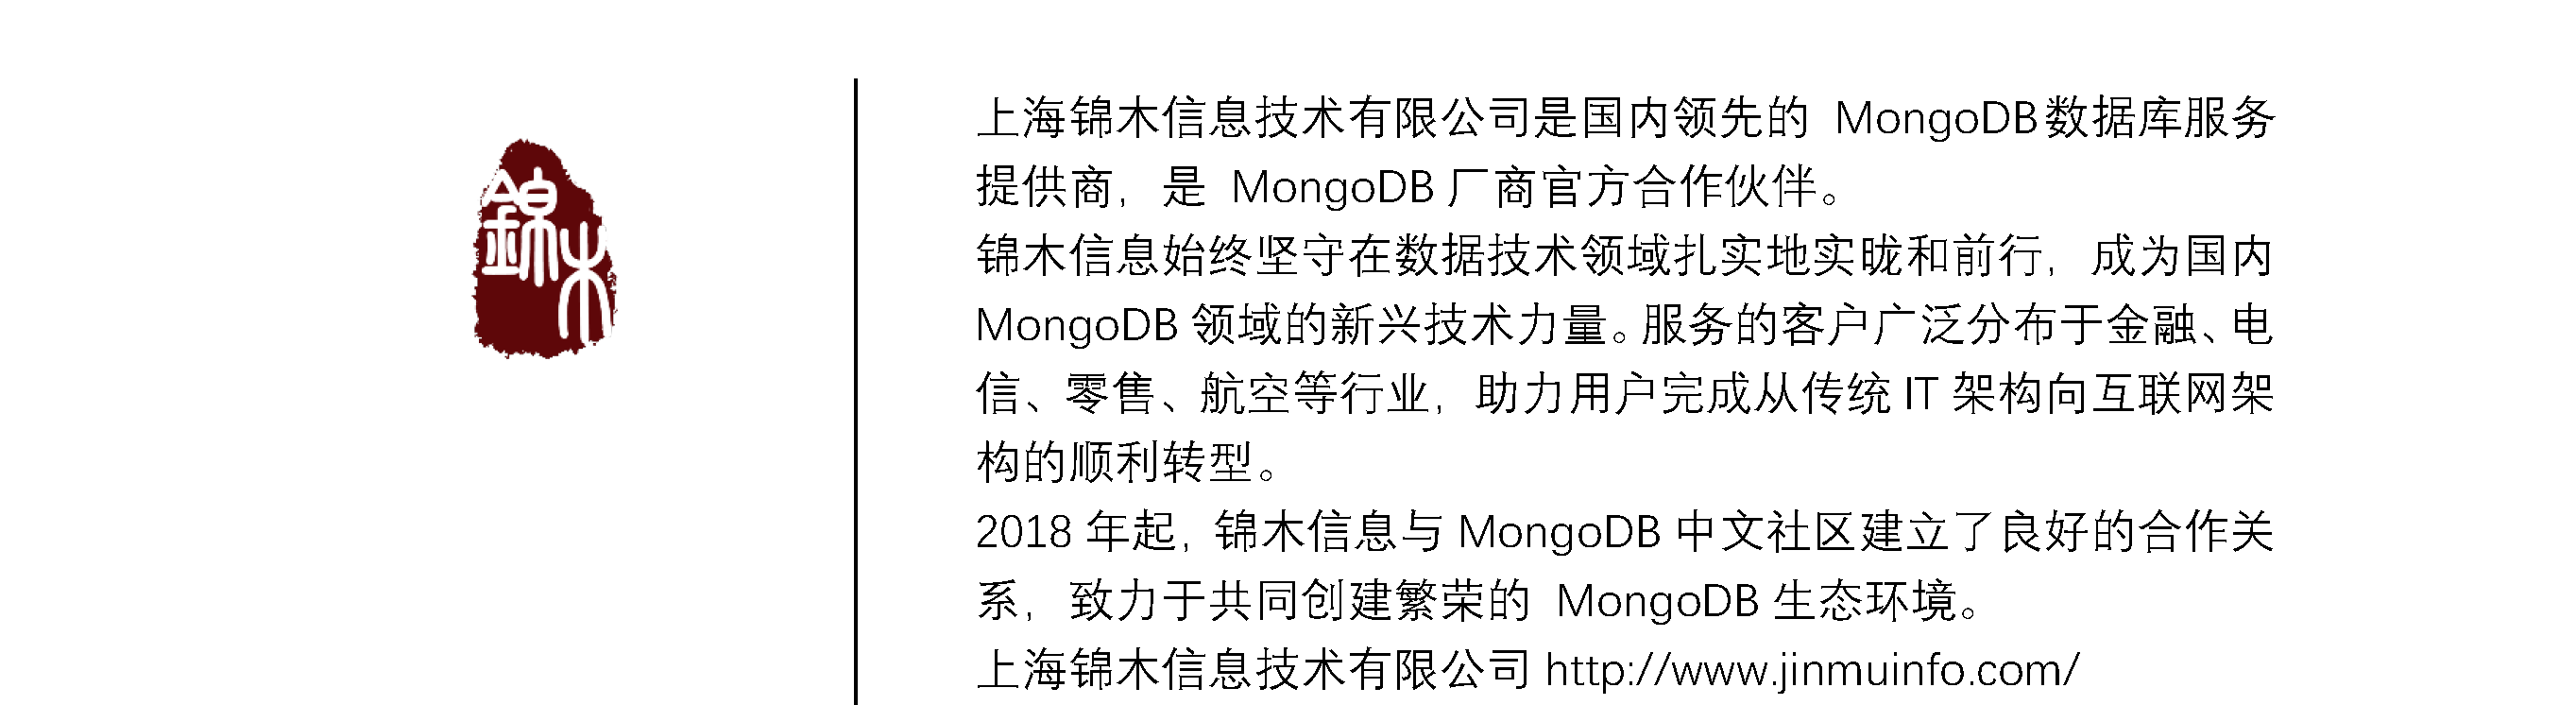 2019年MongoDB中文社区 北京大会